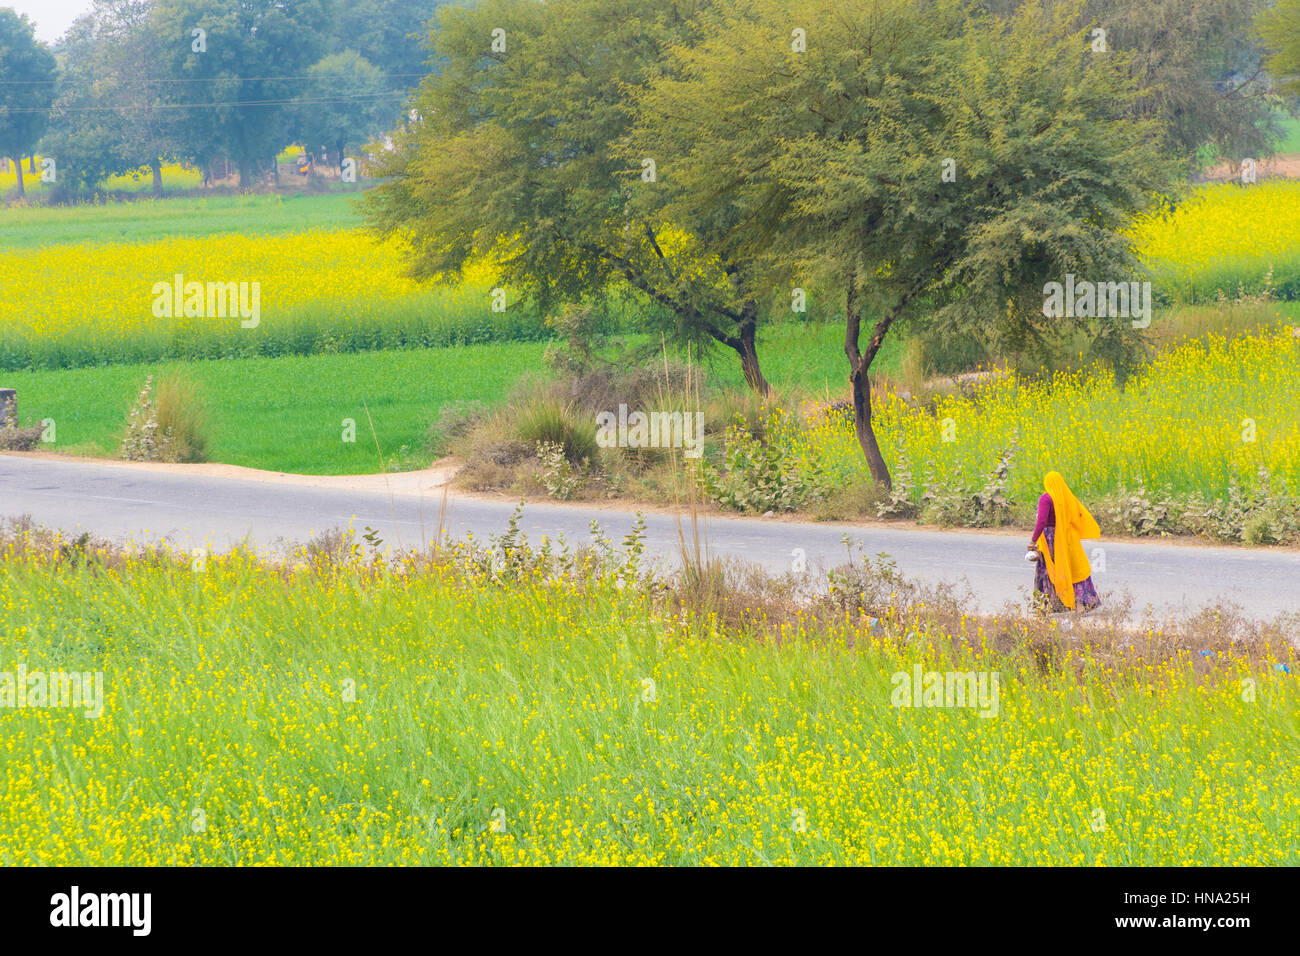 Abhaneri, Inde, 21 janvier 2017 - une femme marche sur une route, après les champs de moutarde à Abhaneri, Rajasthan, Inde. Banque D'Images